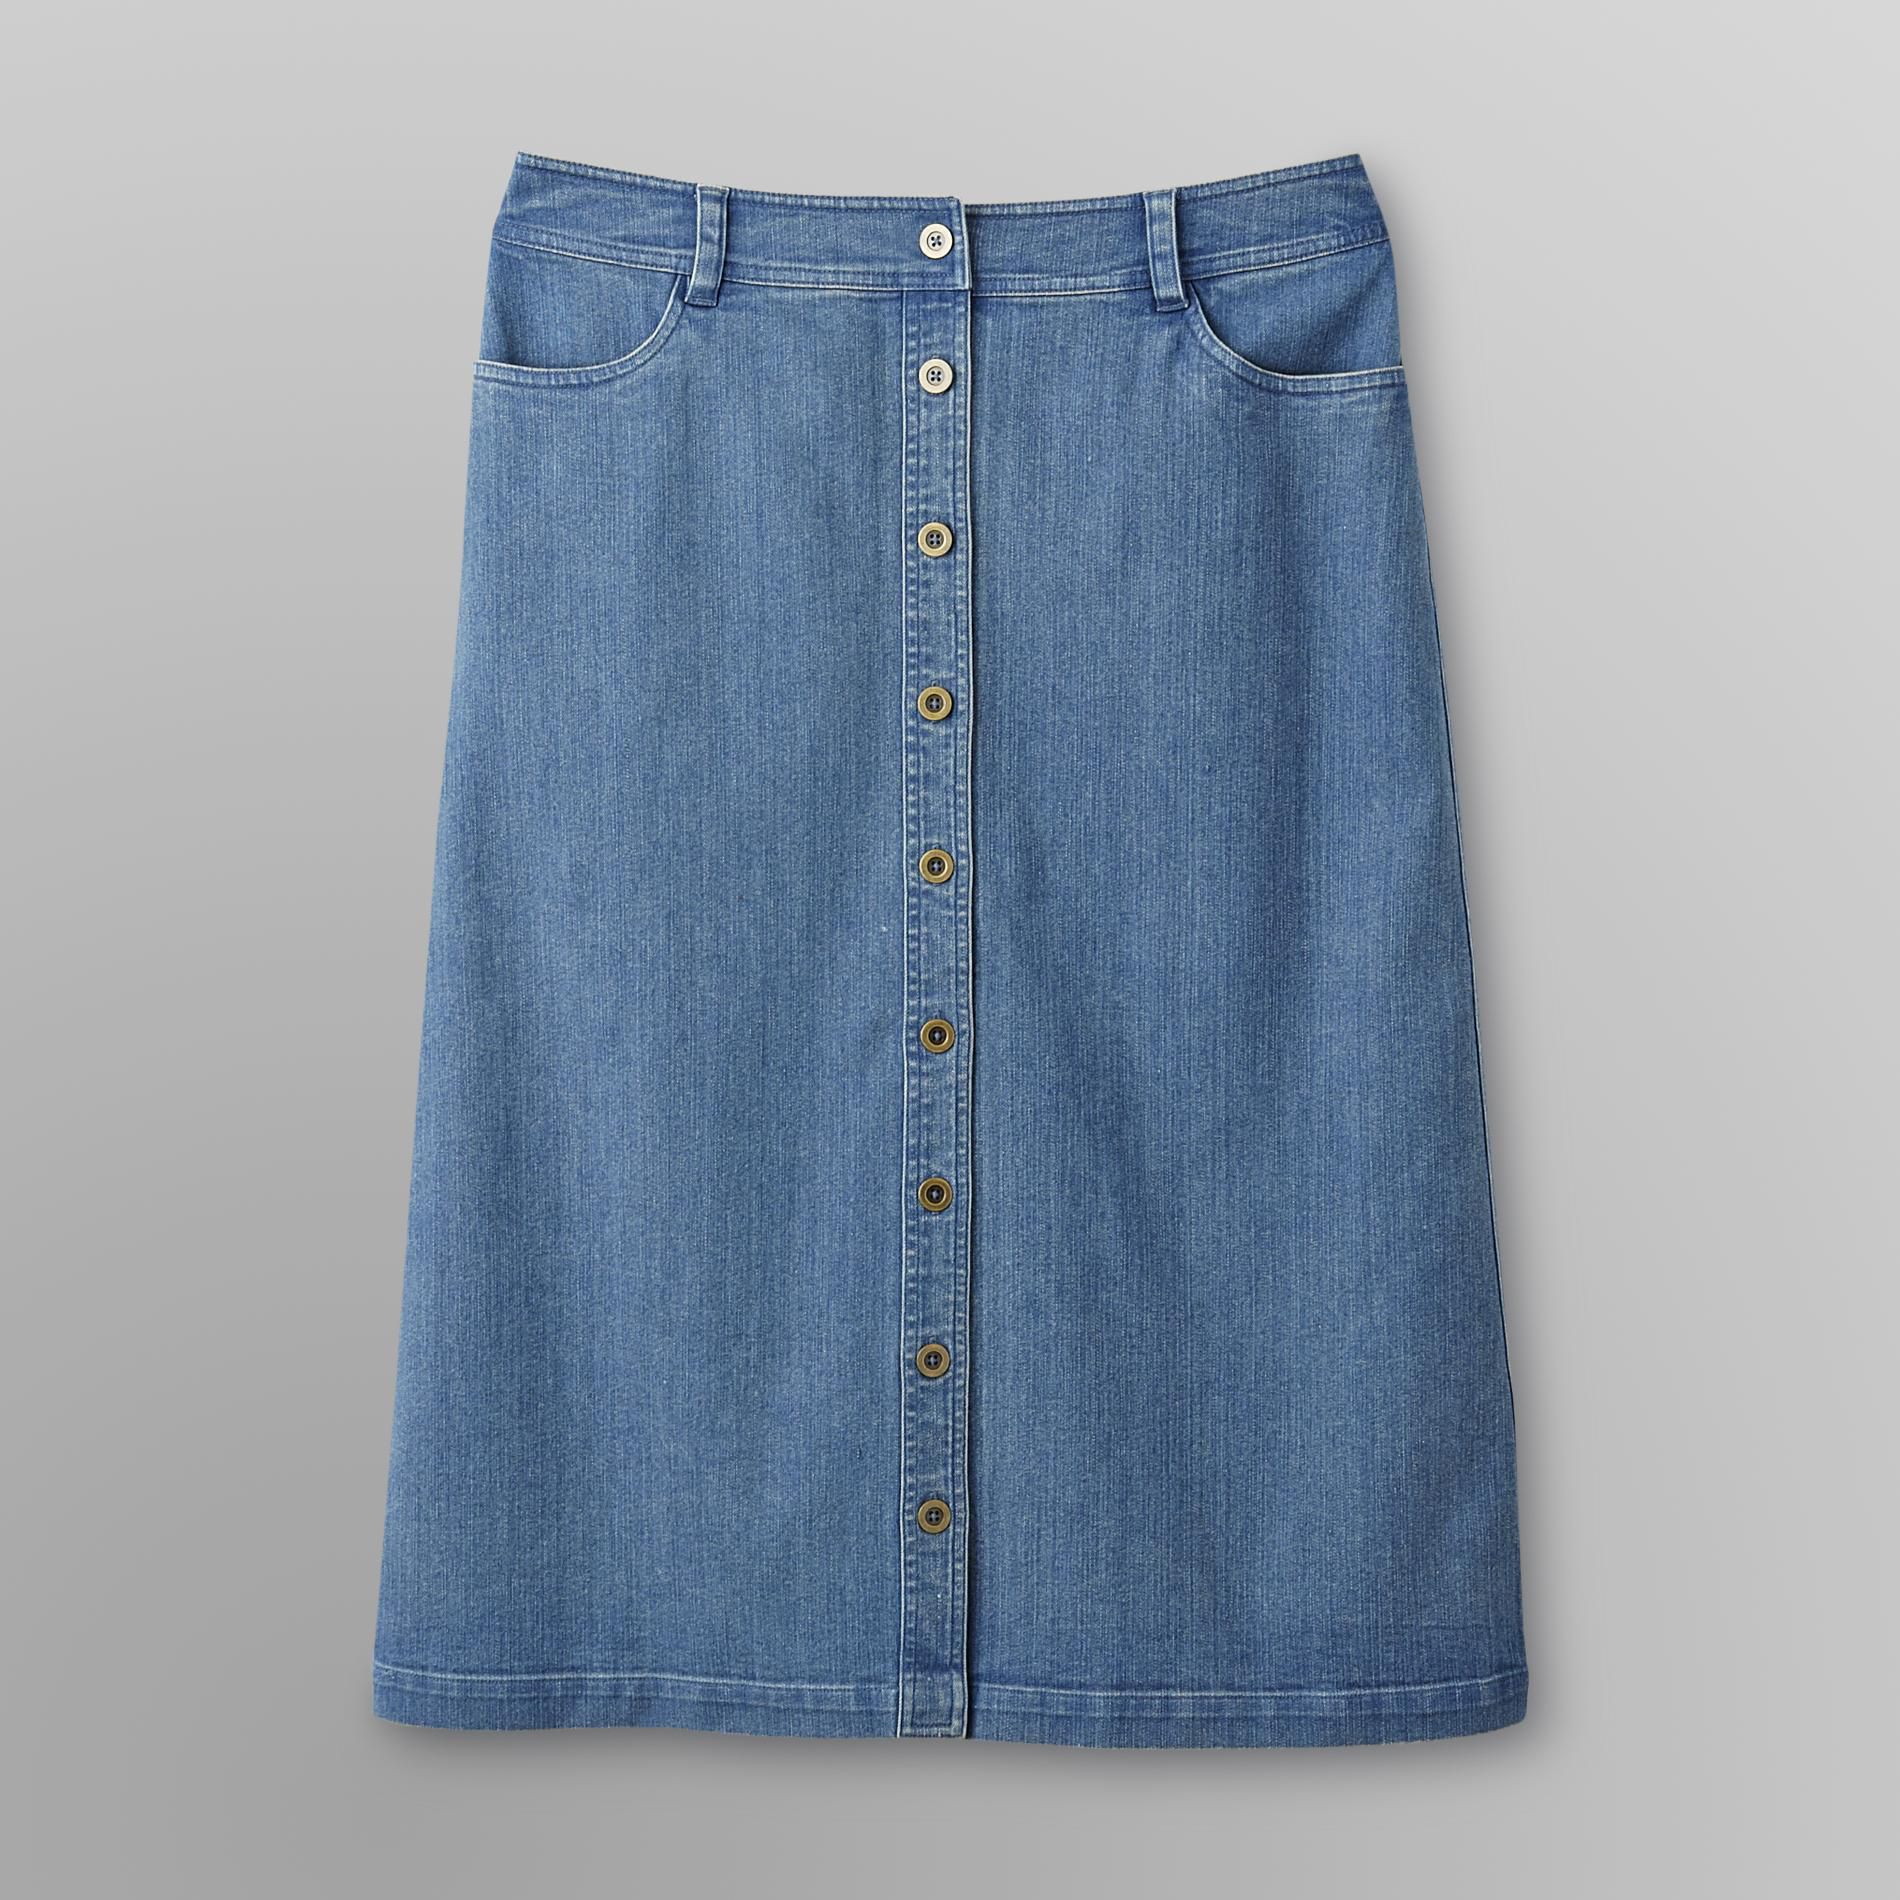 Laura Scott Women's Button-Front Denim Skirt